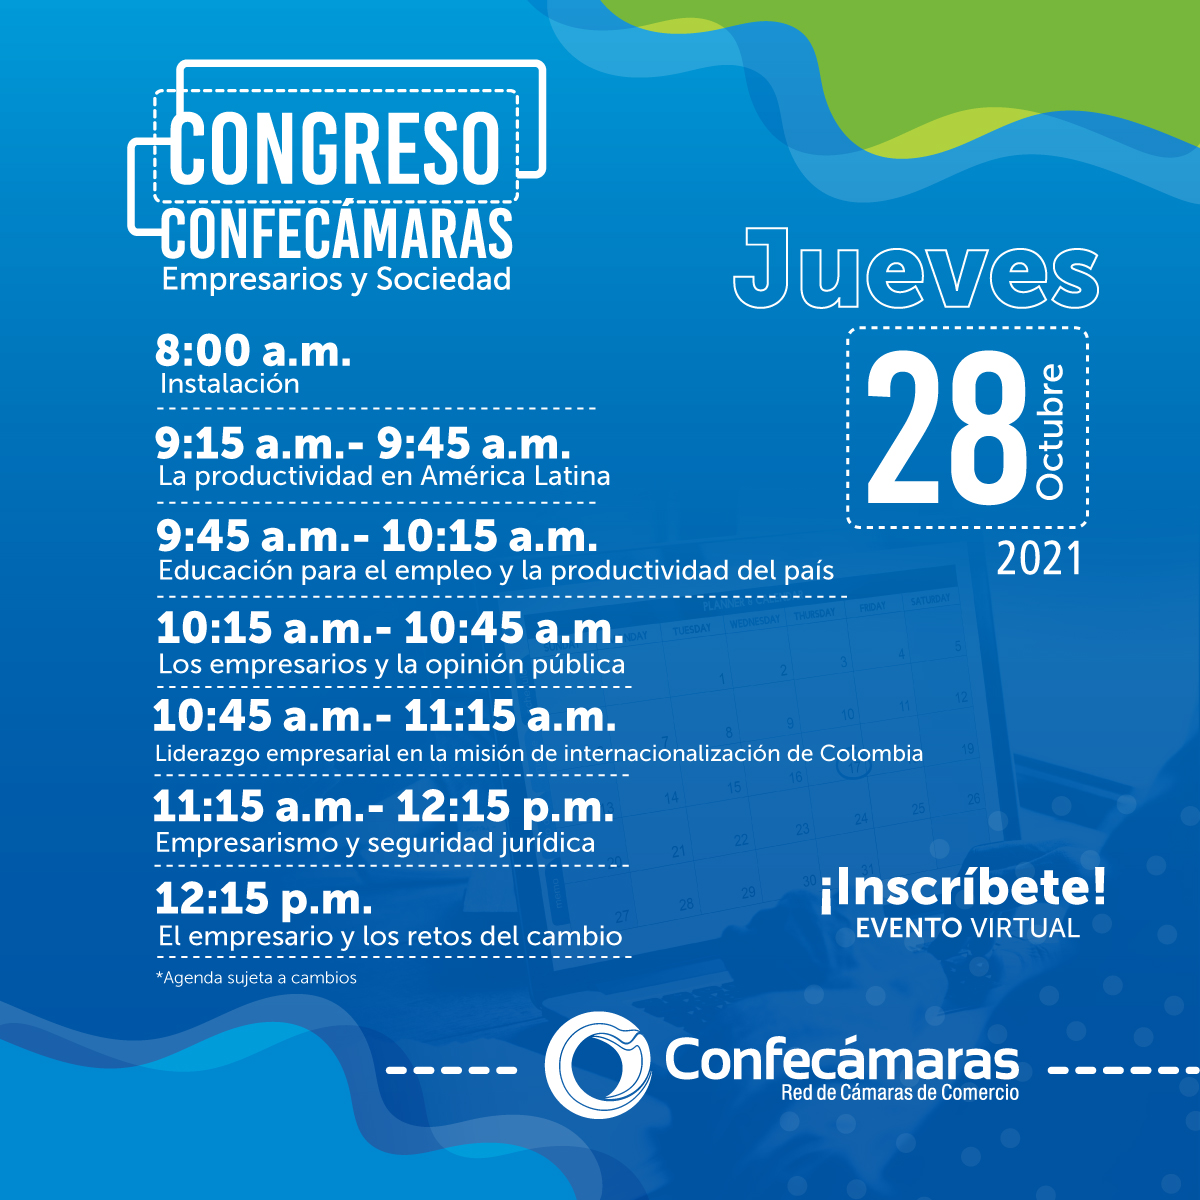 La Cámara de Comercio de Manizales por Caldas invita al congreso de Confecámaras 2021 ‘Empresarios y Sociedad’.